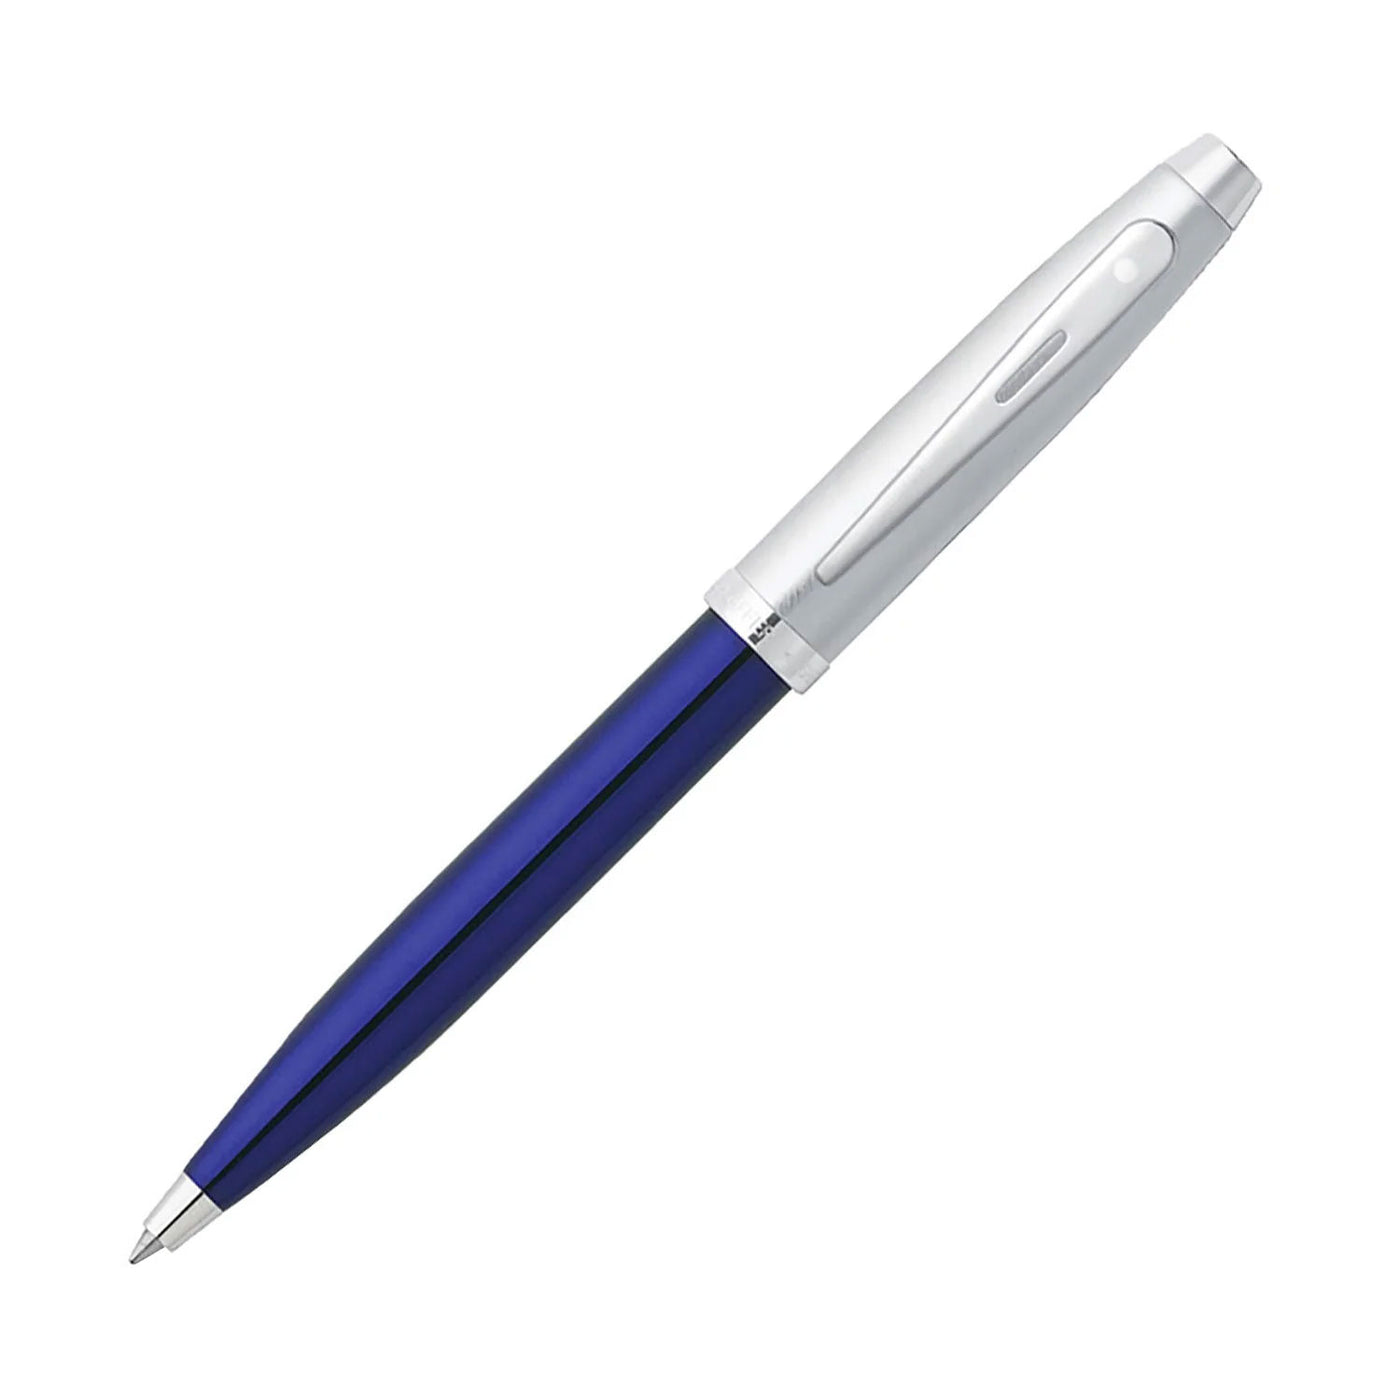 Sheaffer 100 Ball Pen - Blue & Brushed Chrome 1